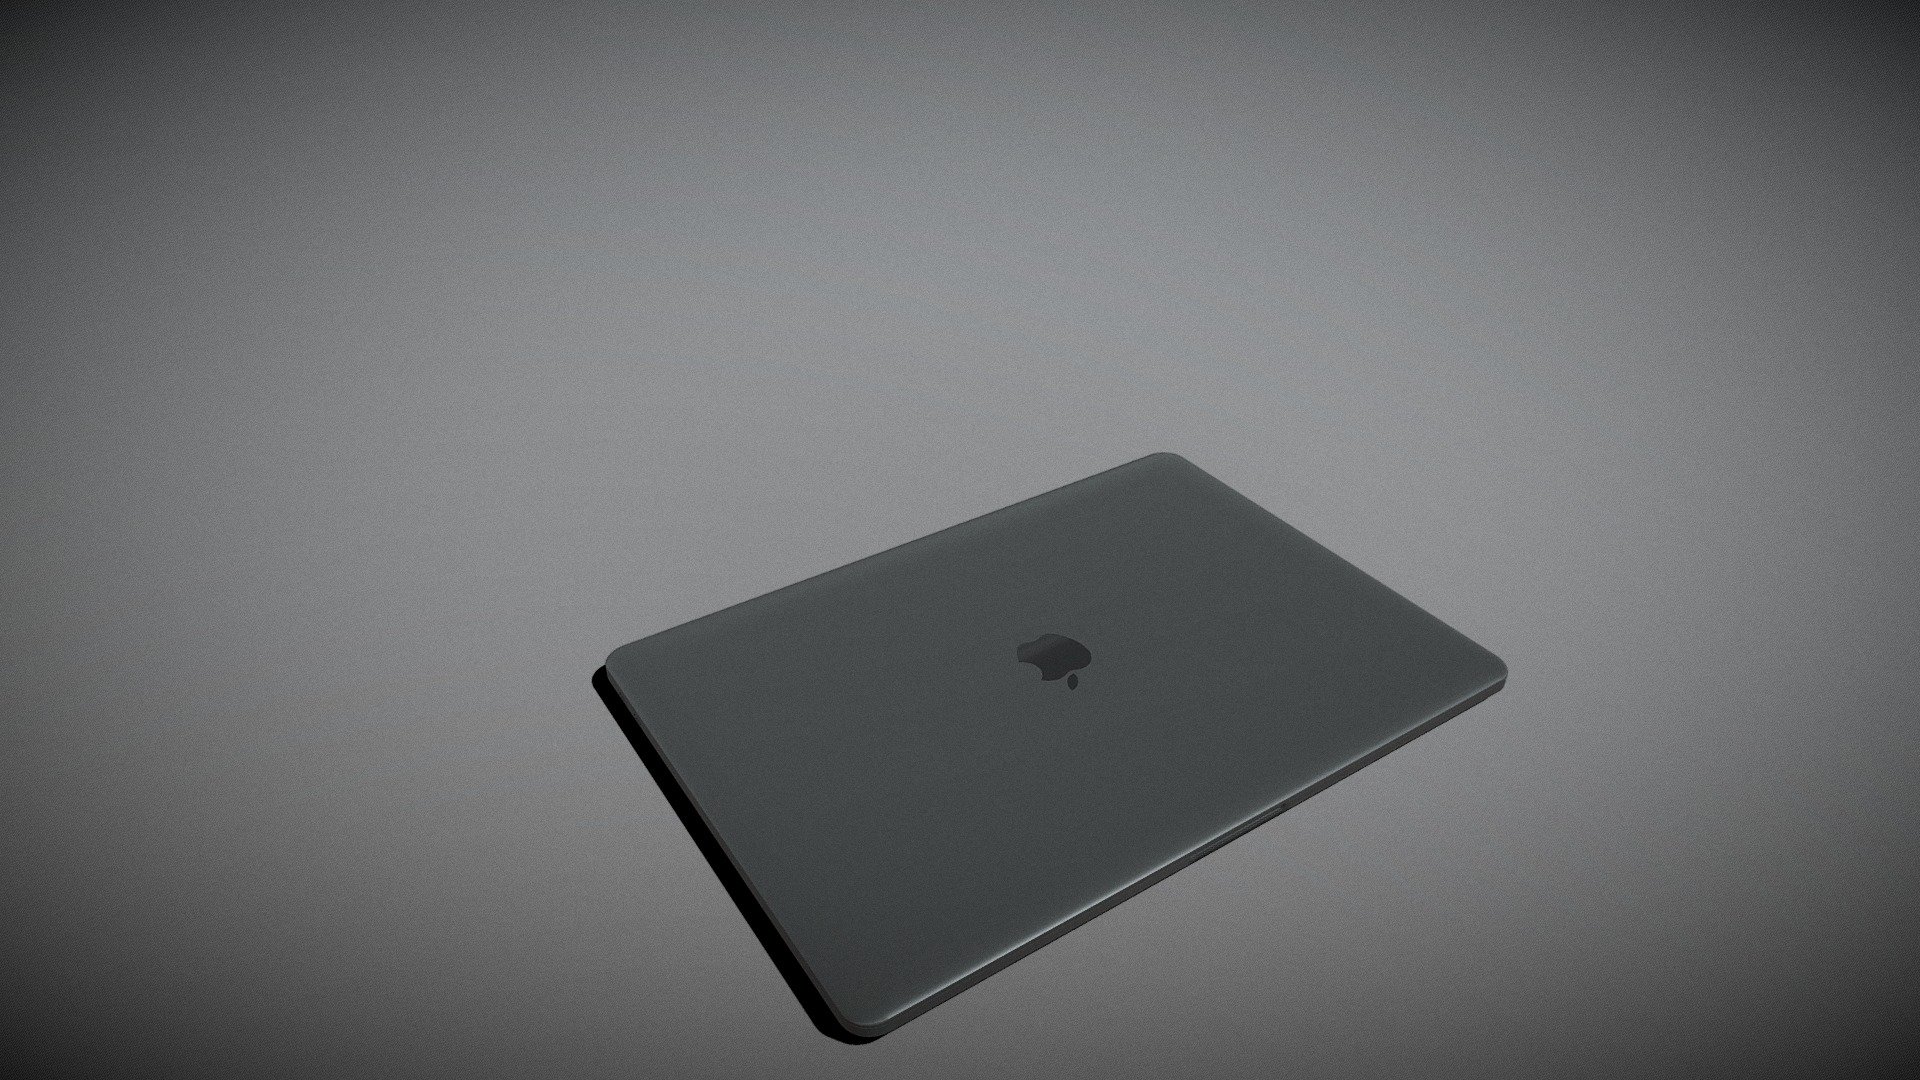 3D apple macbook pro 13 - TurboSquid 1554155